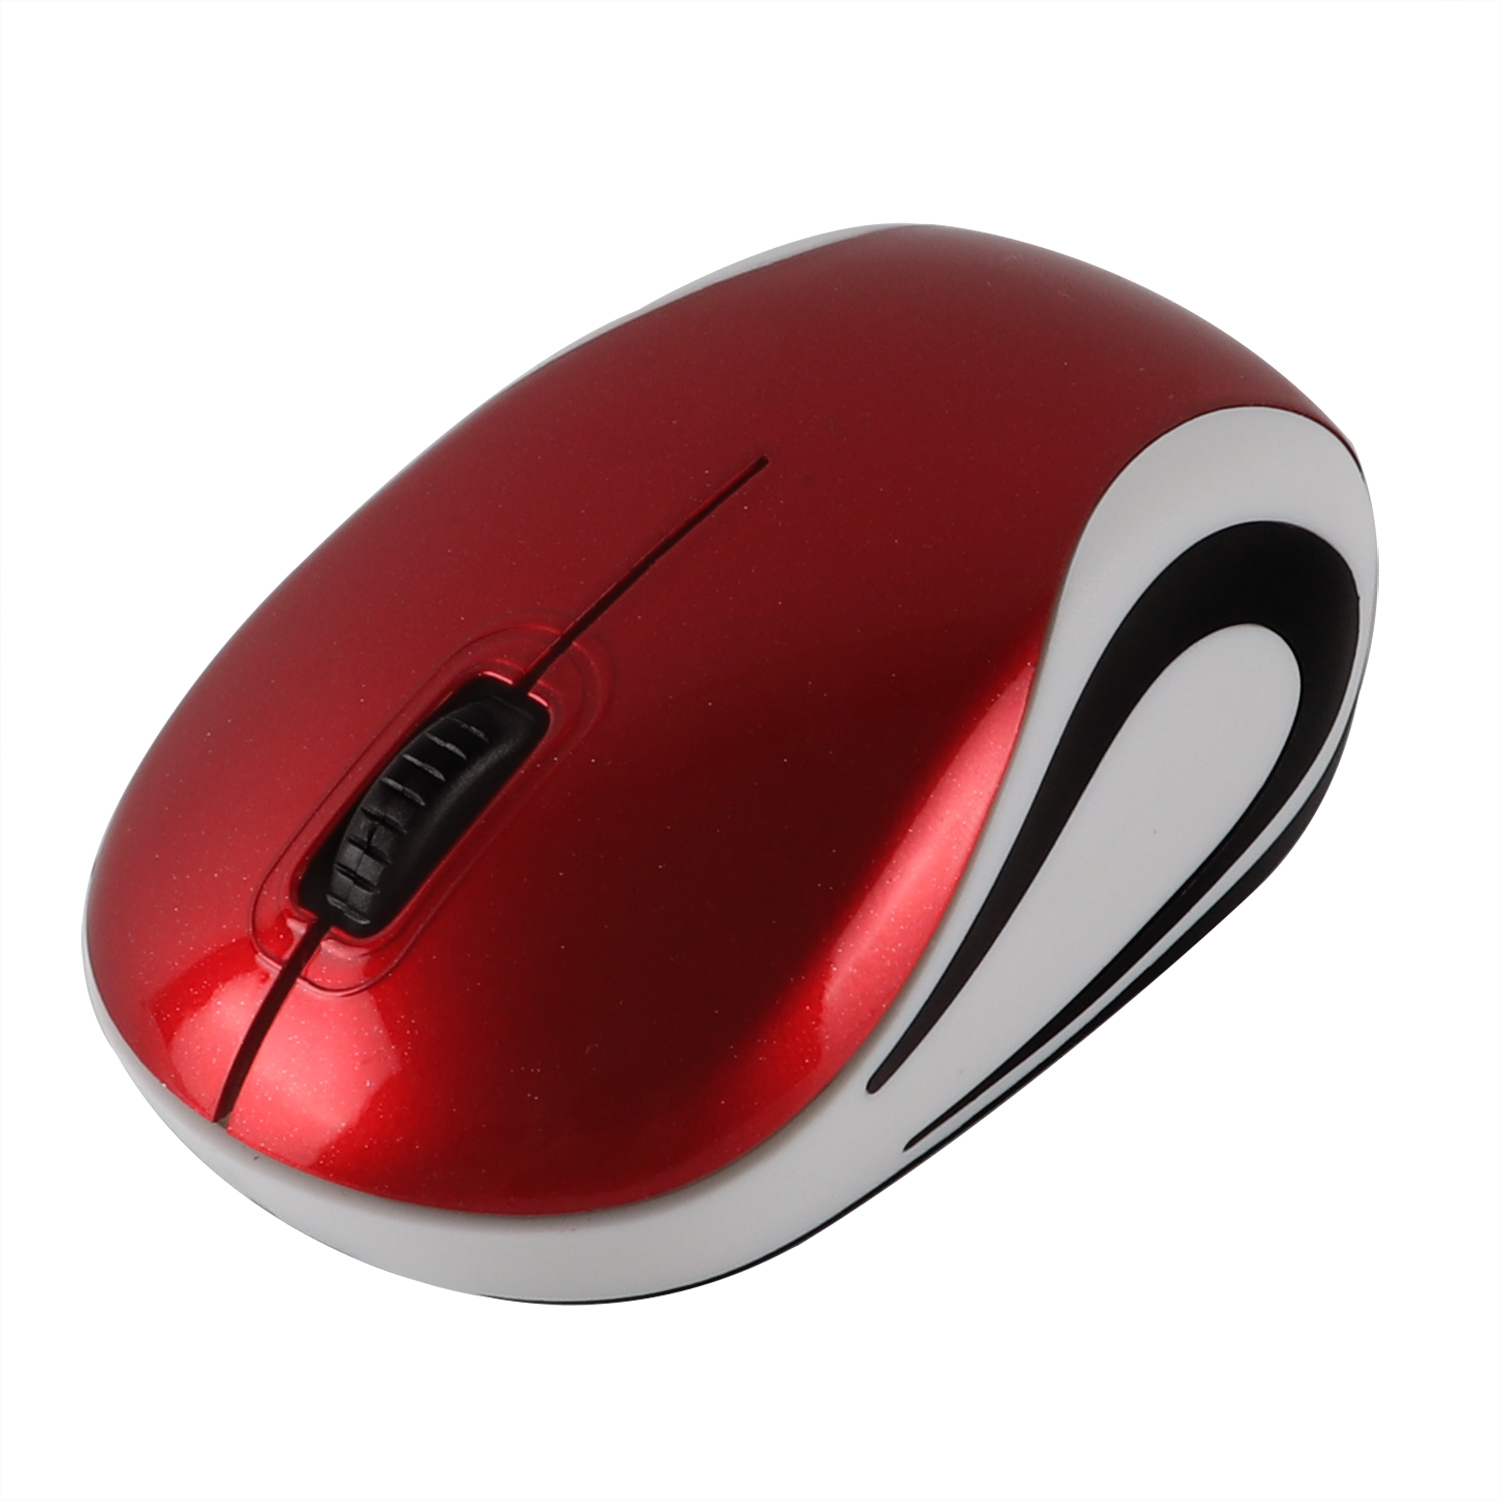 Mouse-Nirkabel-Mini-untuk-Komputer-2-4Ghz-Game-Kecil-Mause-1600-DPI-Optik-USB-Ergonomis-USB (7)